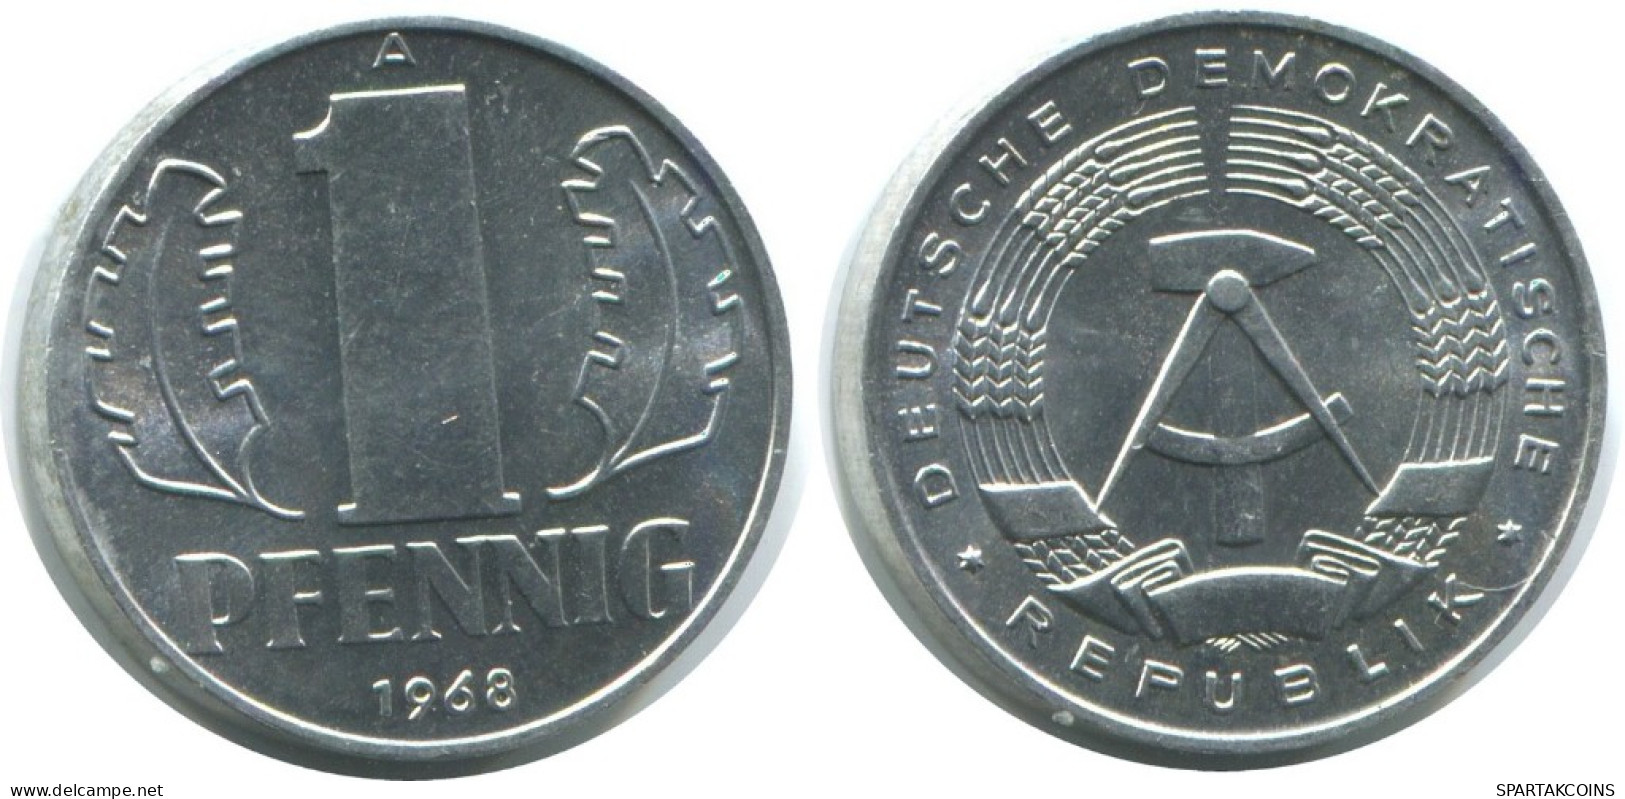 1 PFENNIG 1968 A DDR EAST ALEMANIA Moneda GERMANY #AE074.E.A - 1 Pfennig